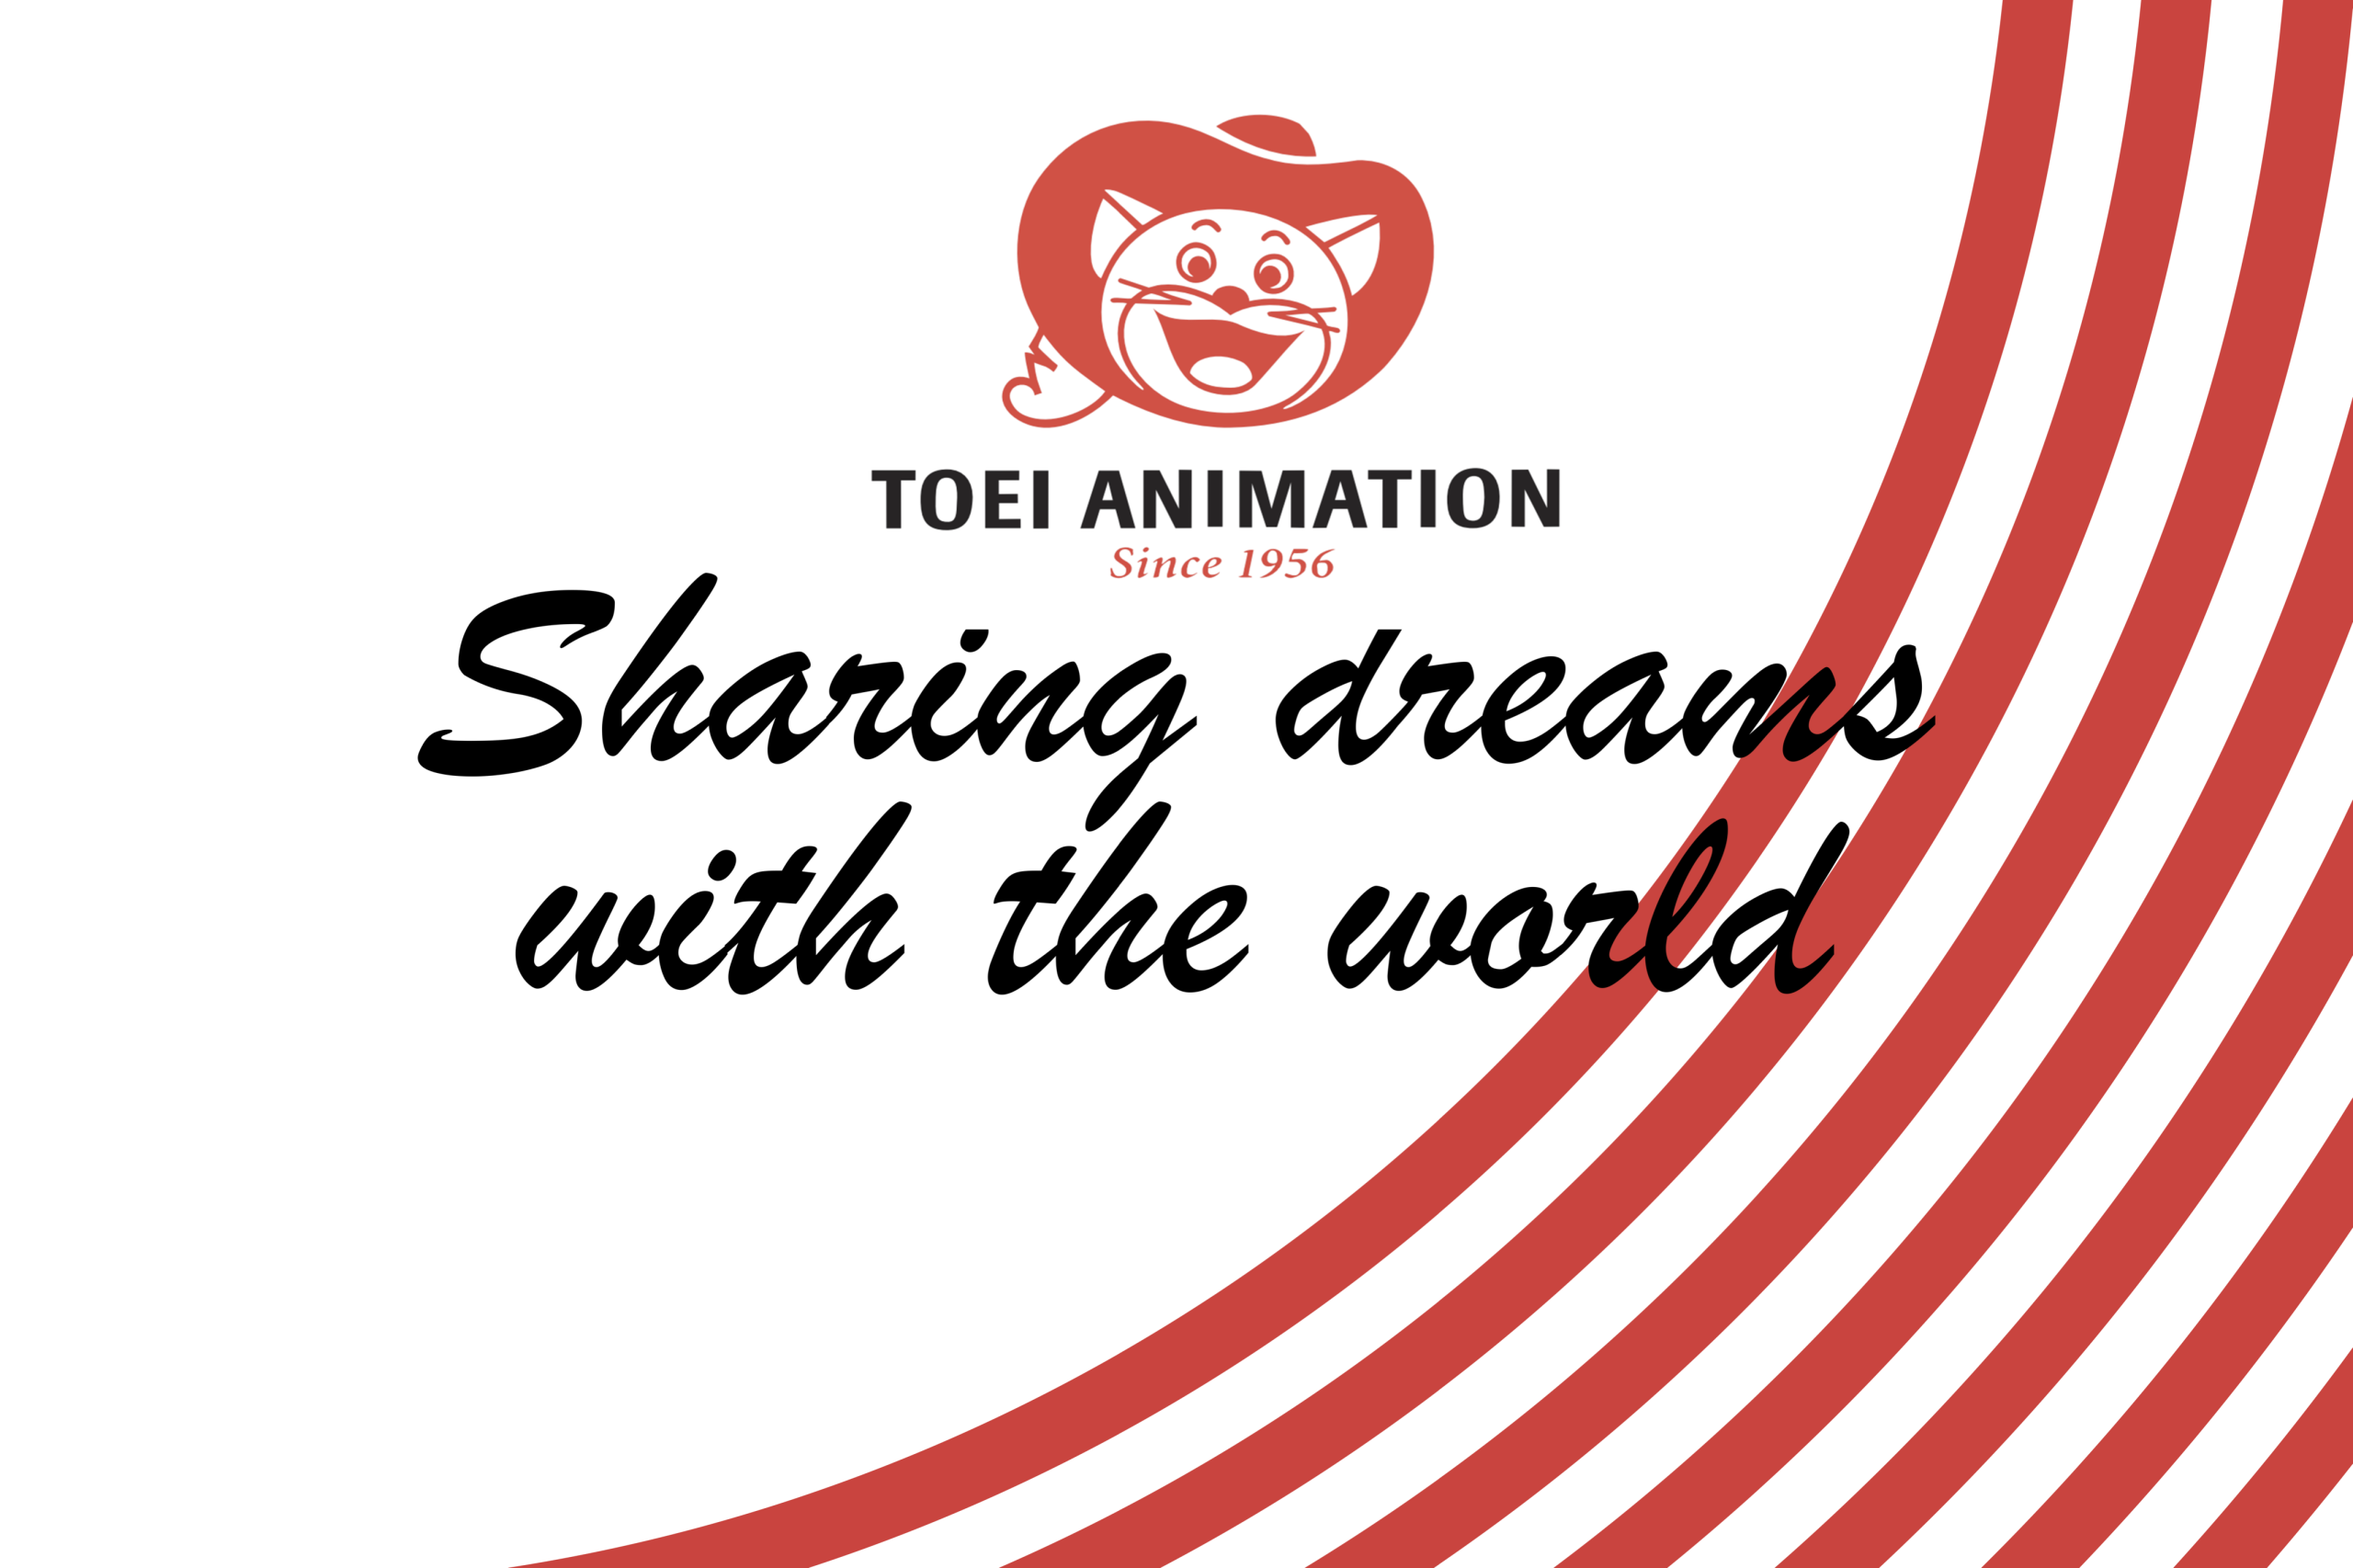 Toei Animation Europe